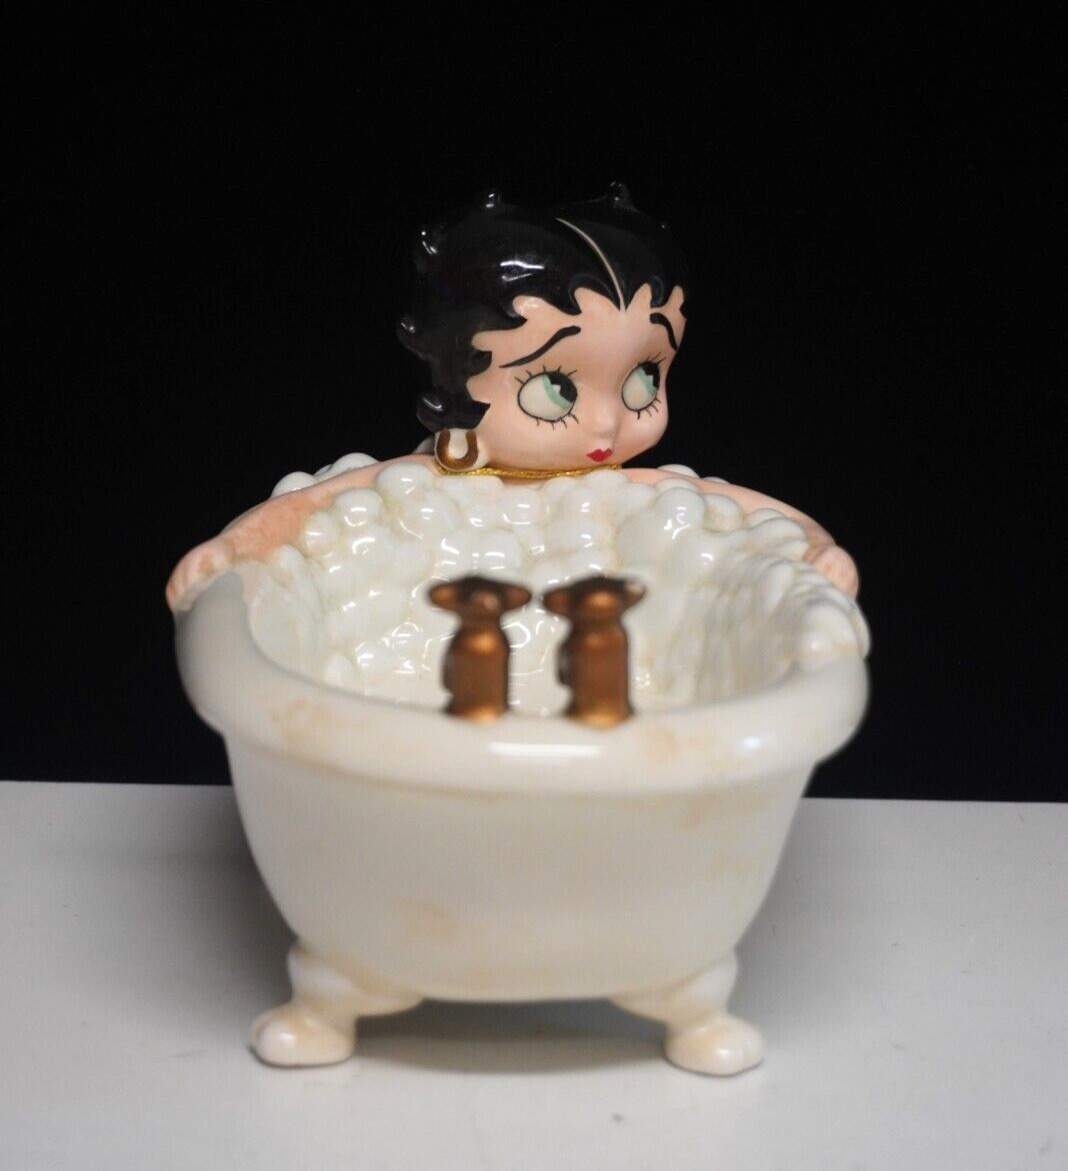 Ceramic Betty Boop In Bubble Bath Tub Soap Dish